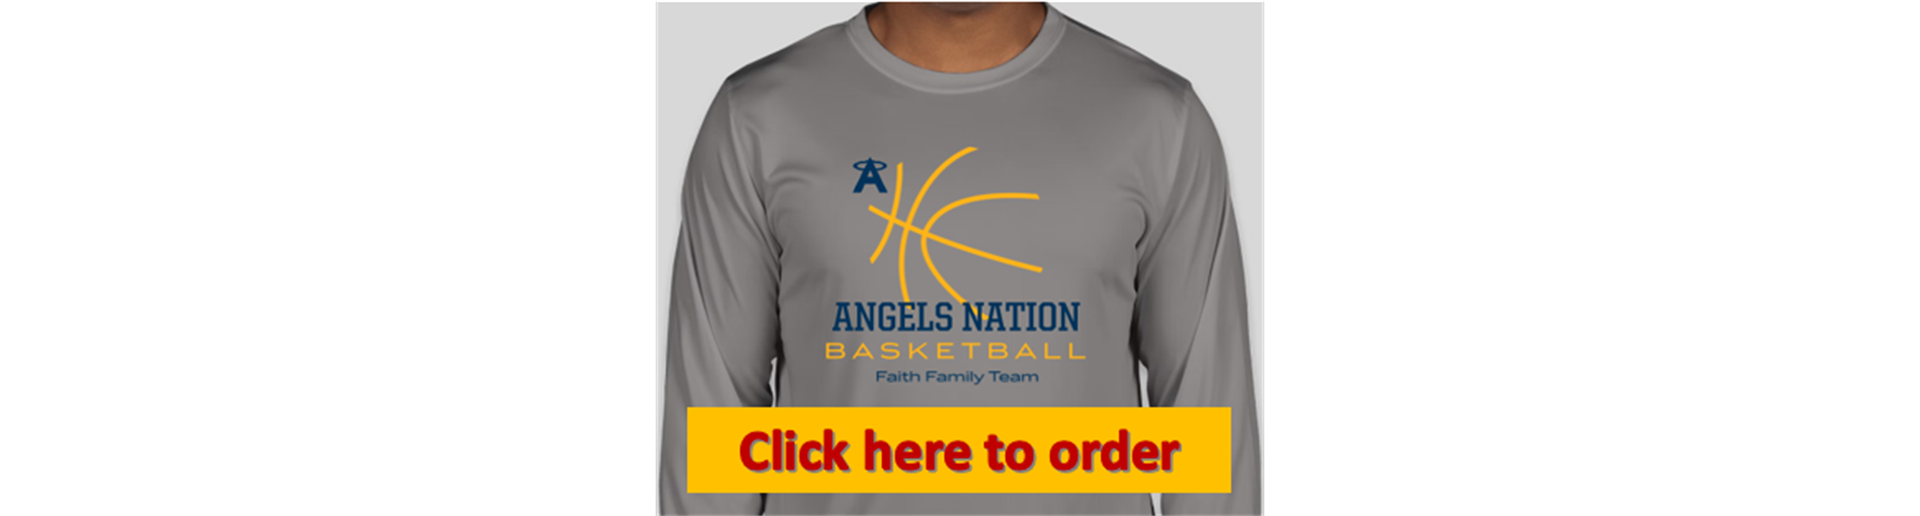 Basketball Shooter Shirts - NOW ON SALE